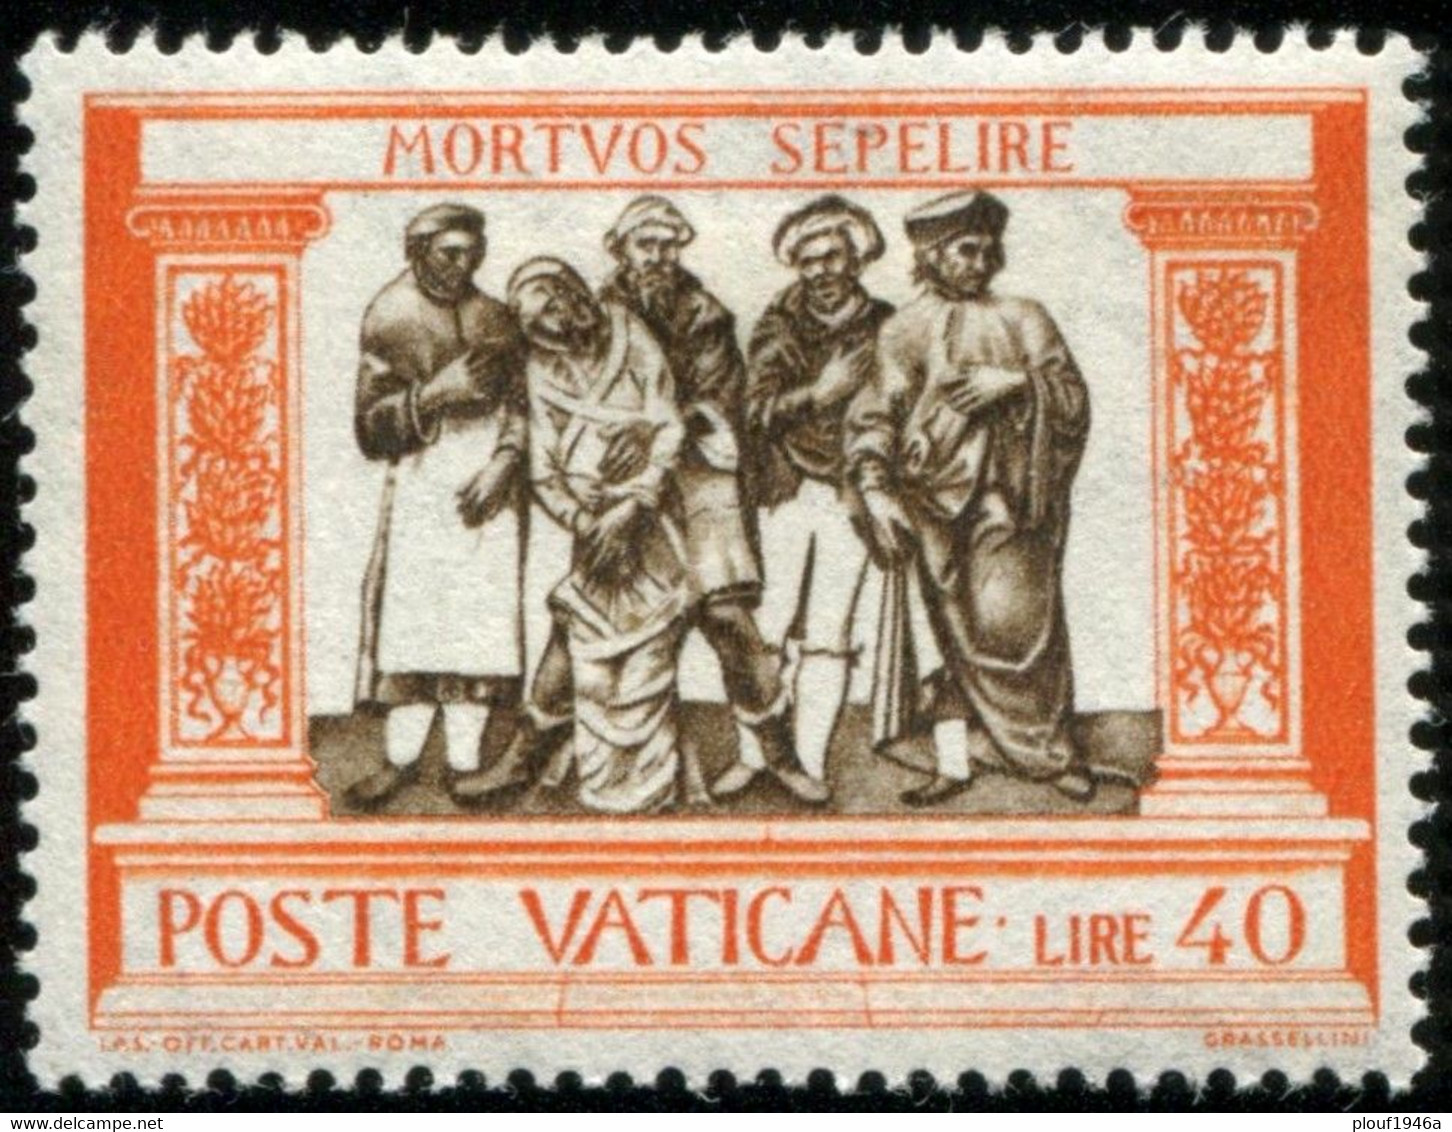 Pays : 495 (Vatican (Cité du))  Yvert et Tellier n° :   302-309 (*)